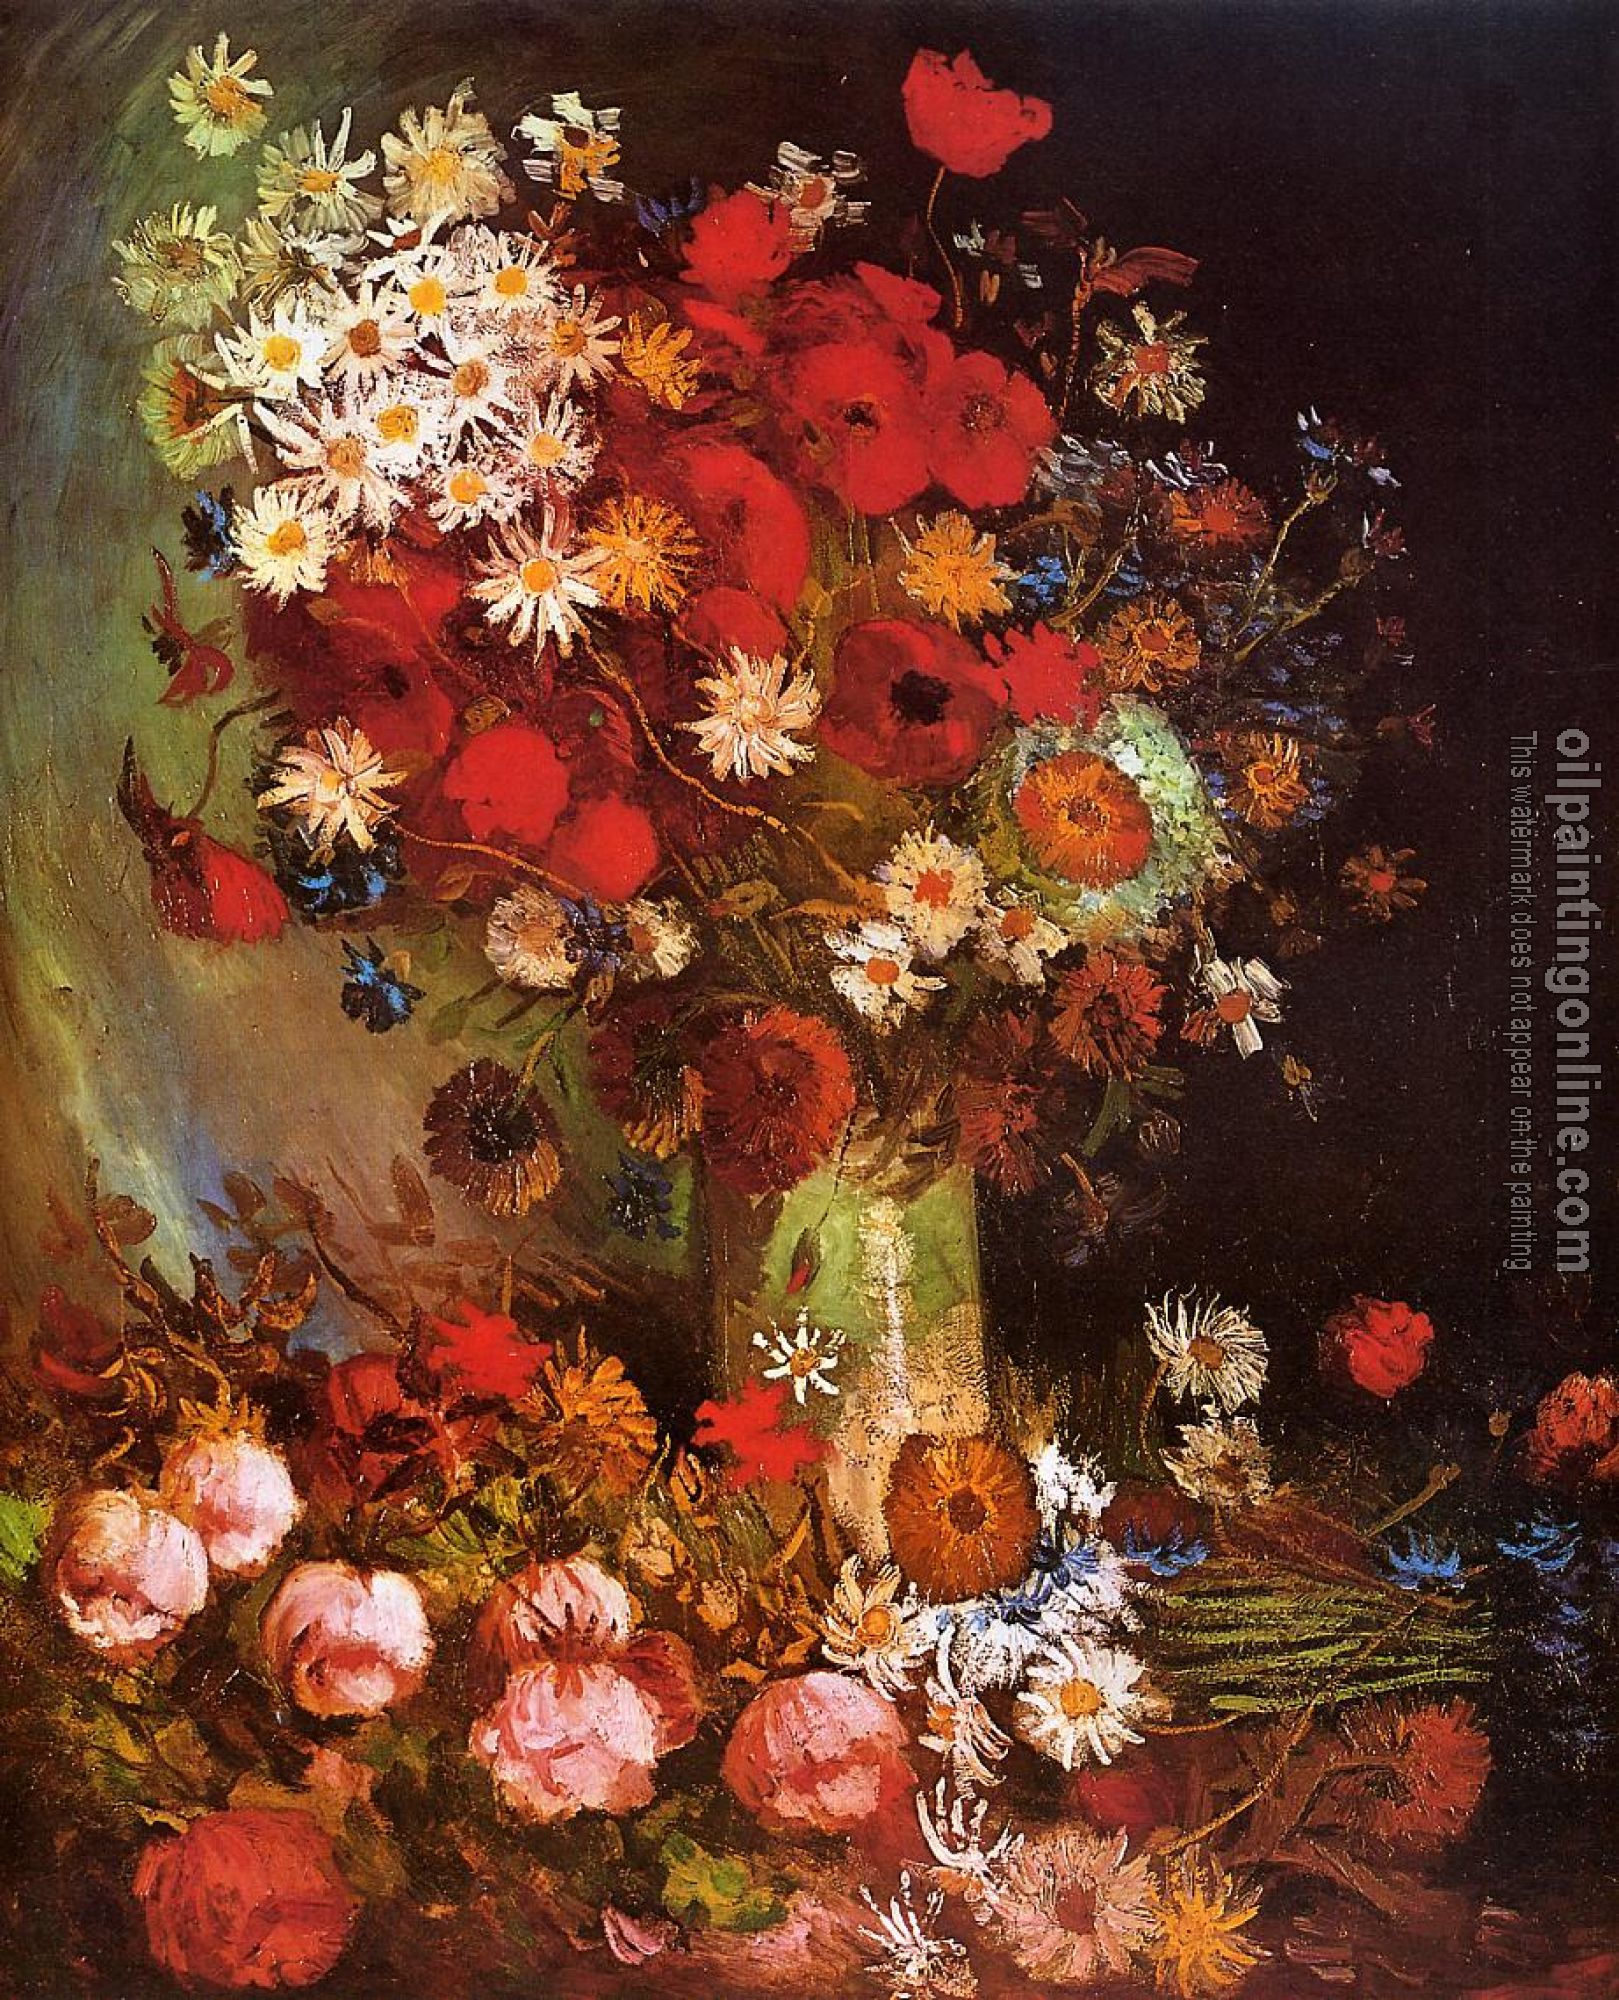 Gogh, Vincent van - Vase with Poppies, Cornflowers, Peonies and Chrysanthemums